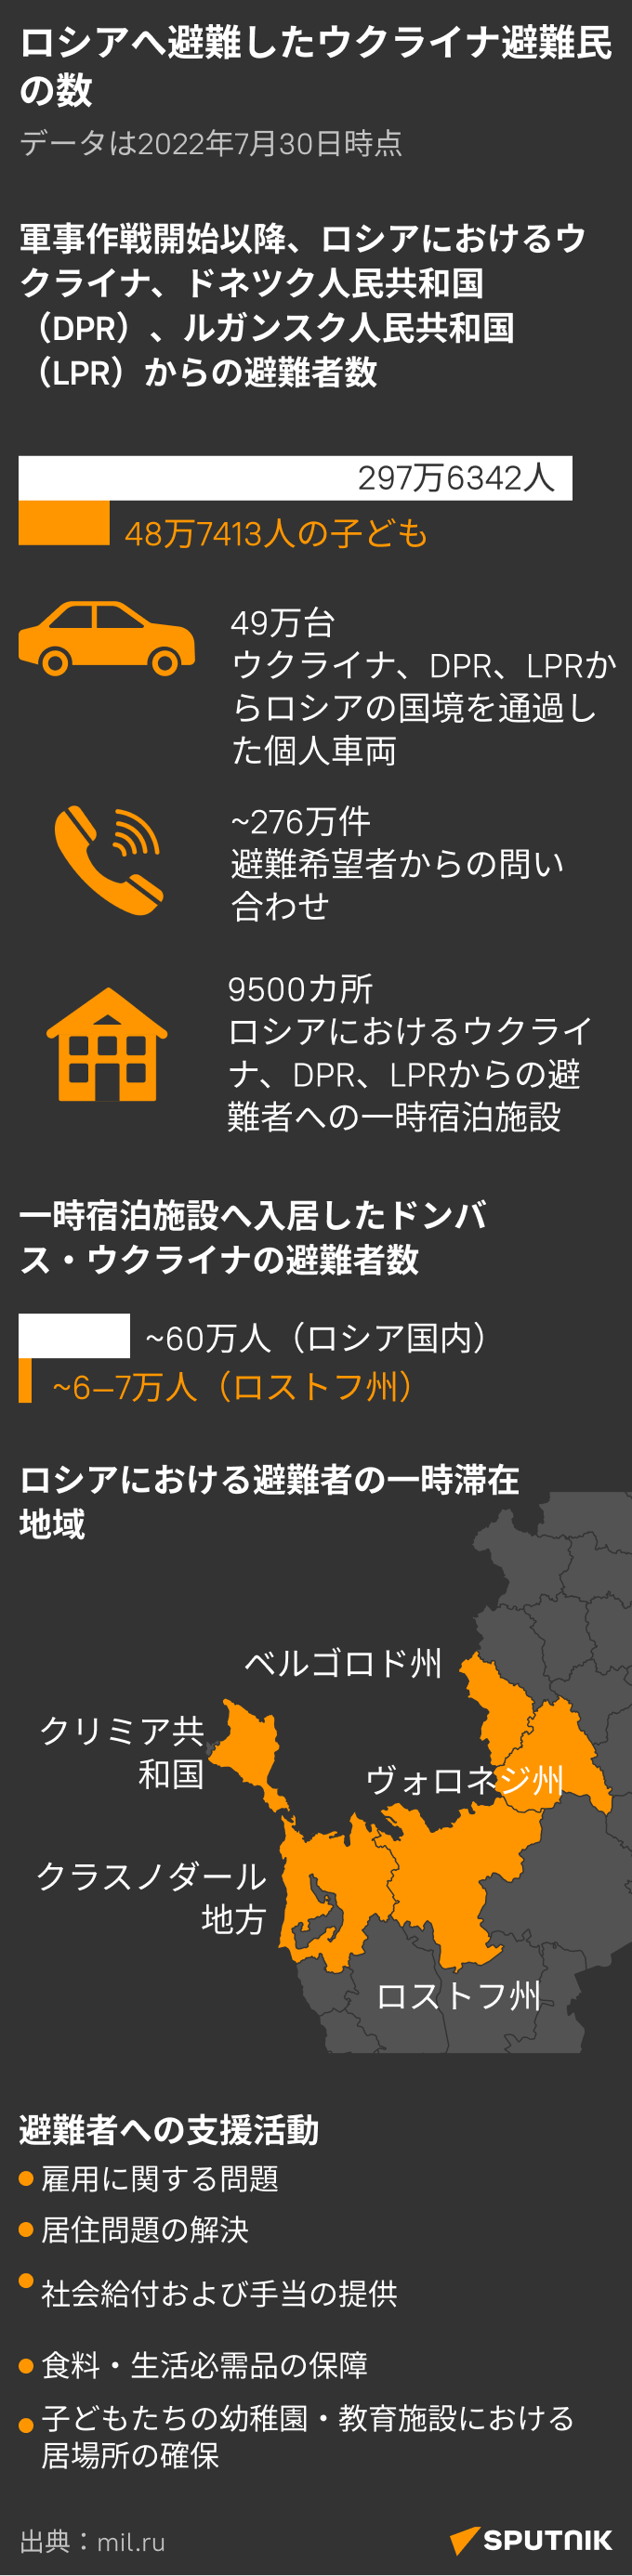 ロシアへ避難したウクライナ避難民の数 - Sputnik 日本